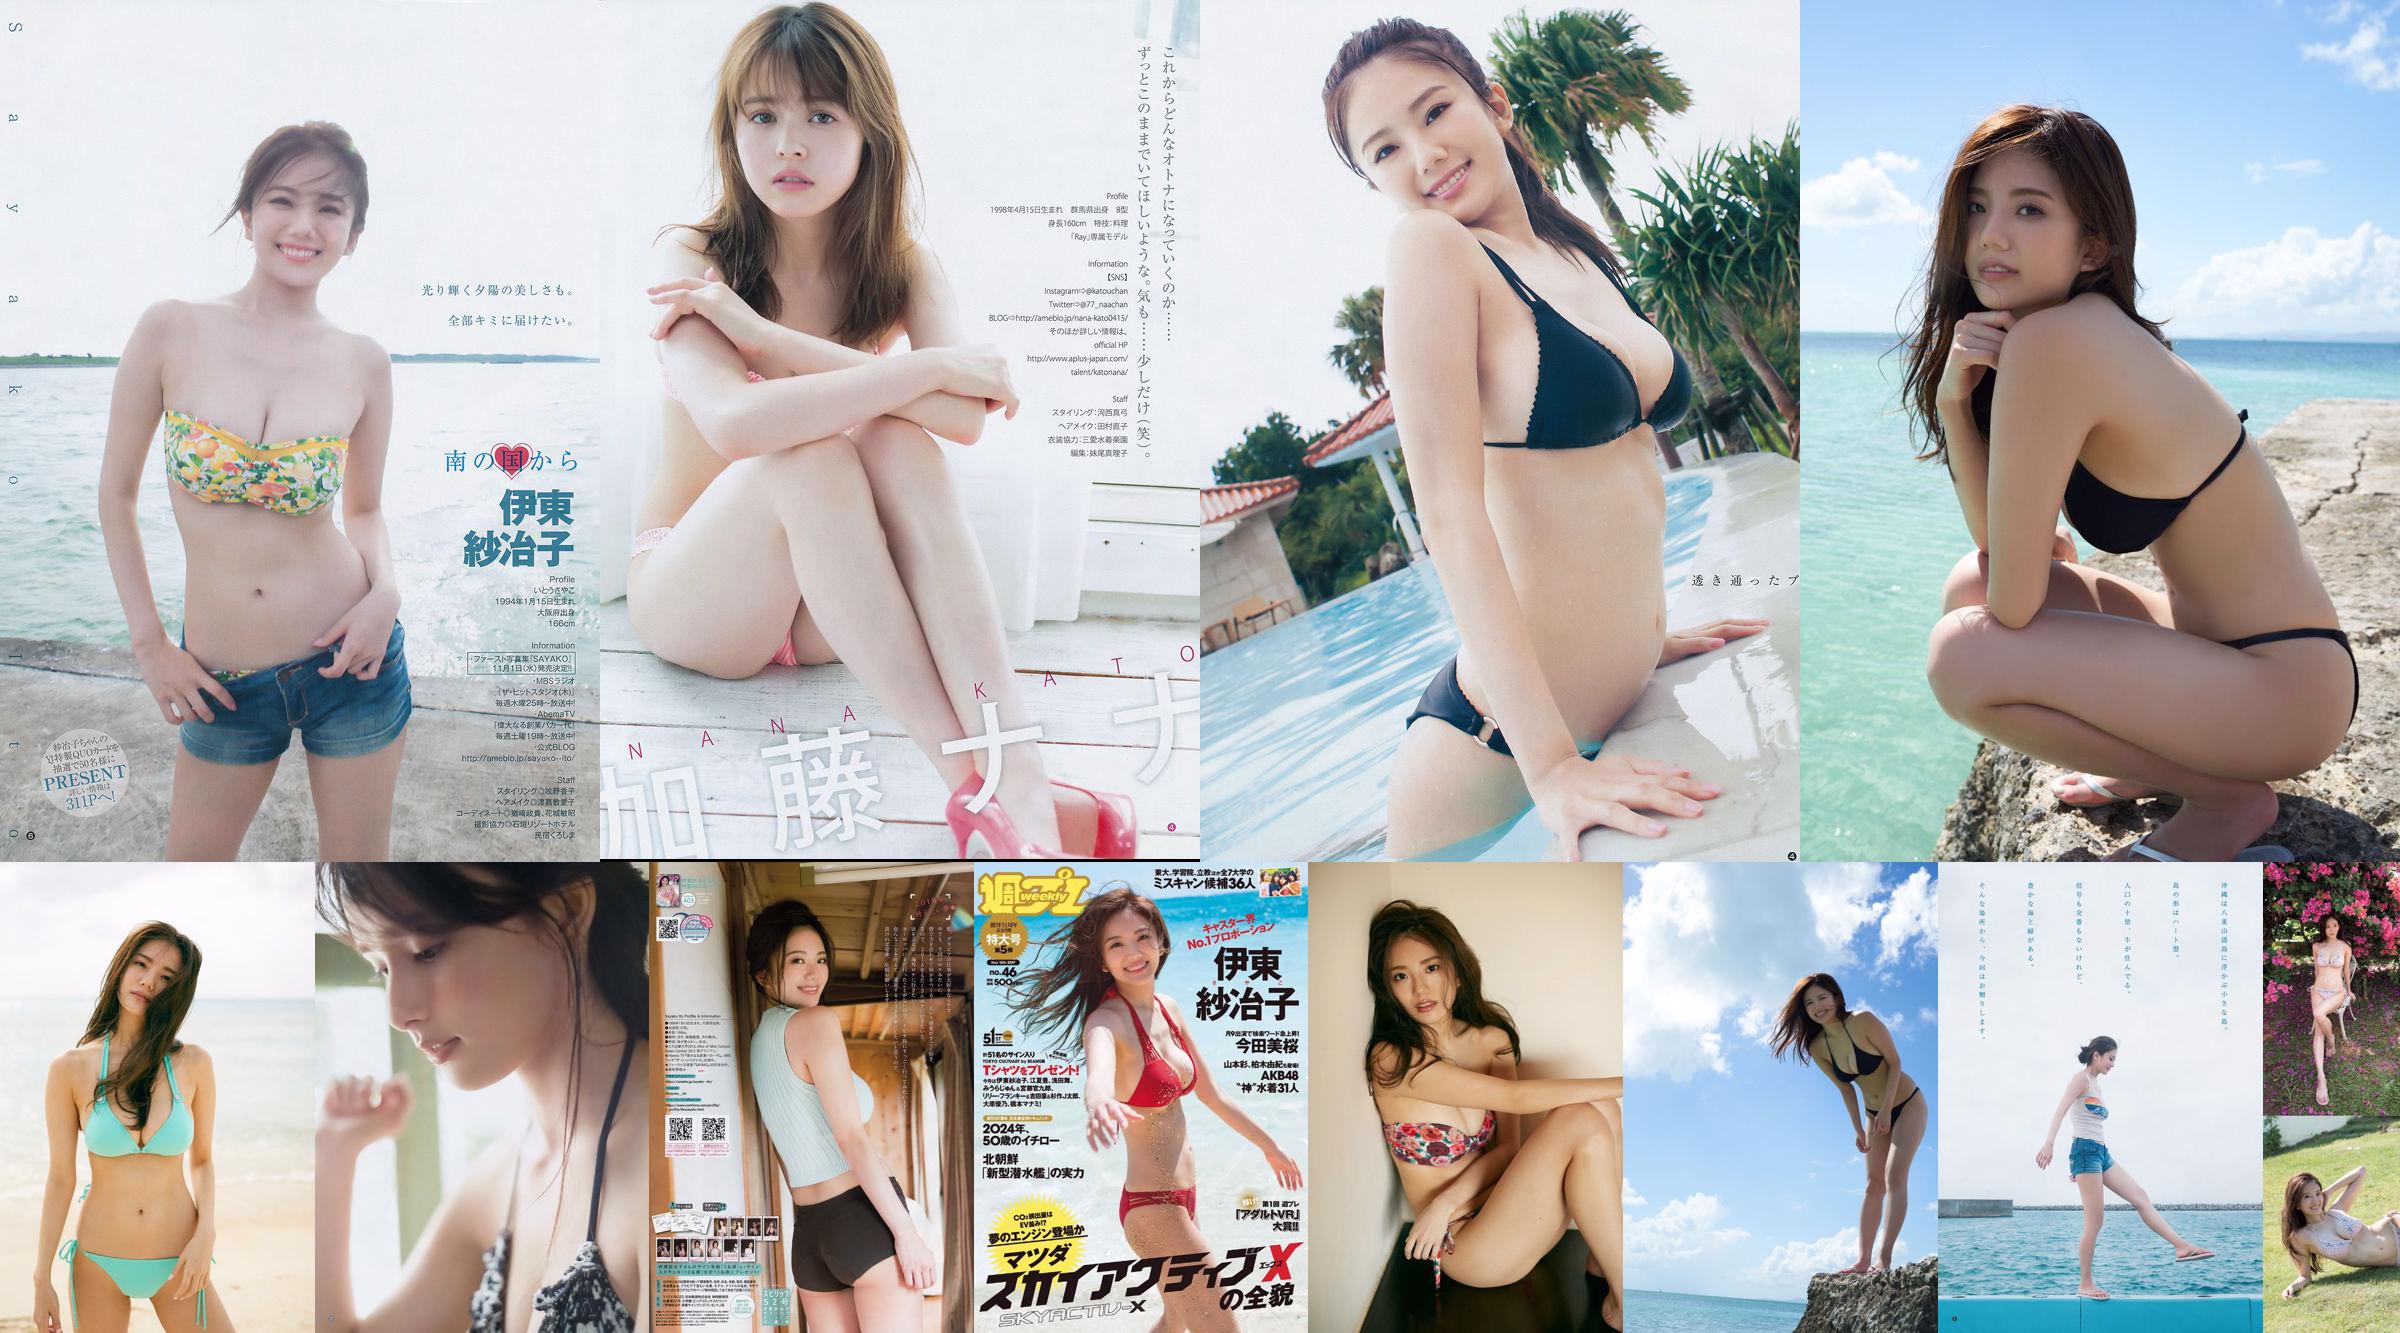 Ito Sayeko, Mima Reiko, Sugimoto Yumi, Sato Reina, Yoshiki りさ Toyama Akiko, Naninao [Wekelijkse Playboy] 2016 No.36 Photo Magazine No.c152ae Pagina 1